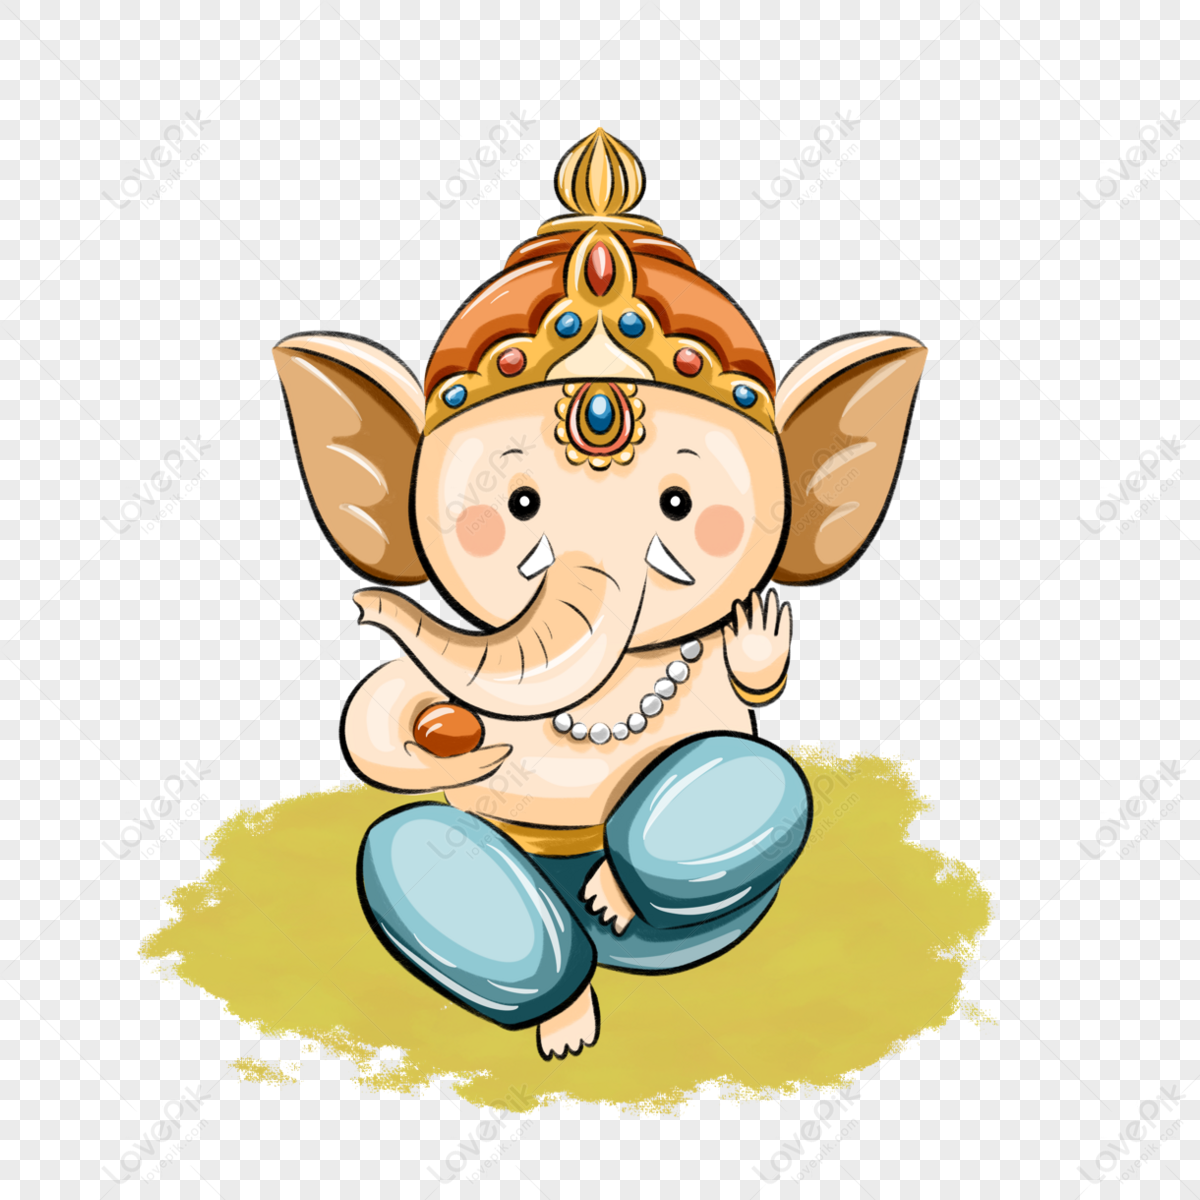 Ganesh Logo PNG Transparent Images Free Download | Vector Files | Pngtree